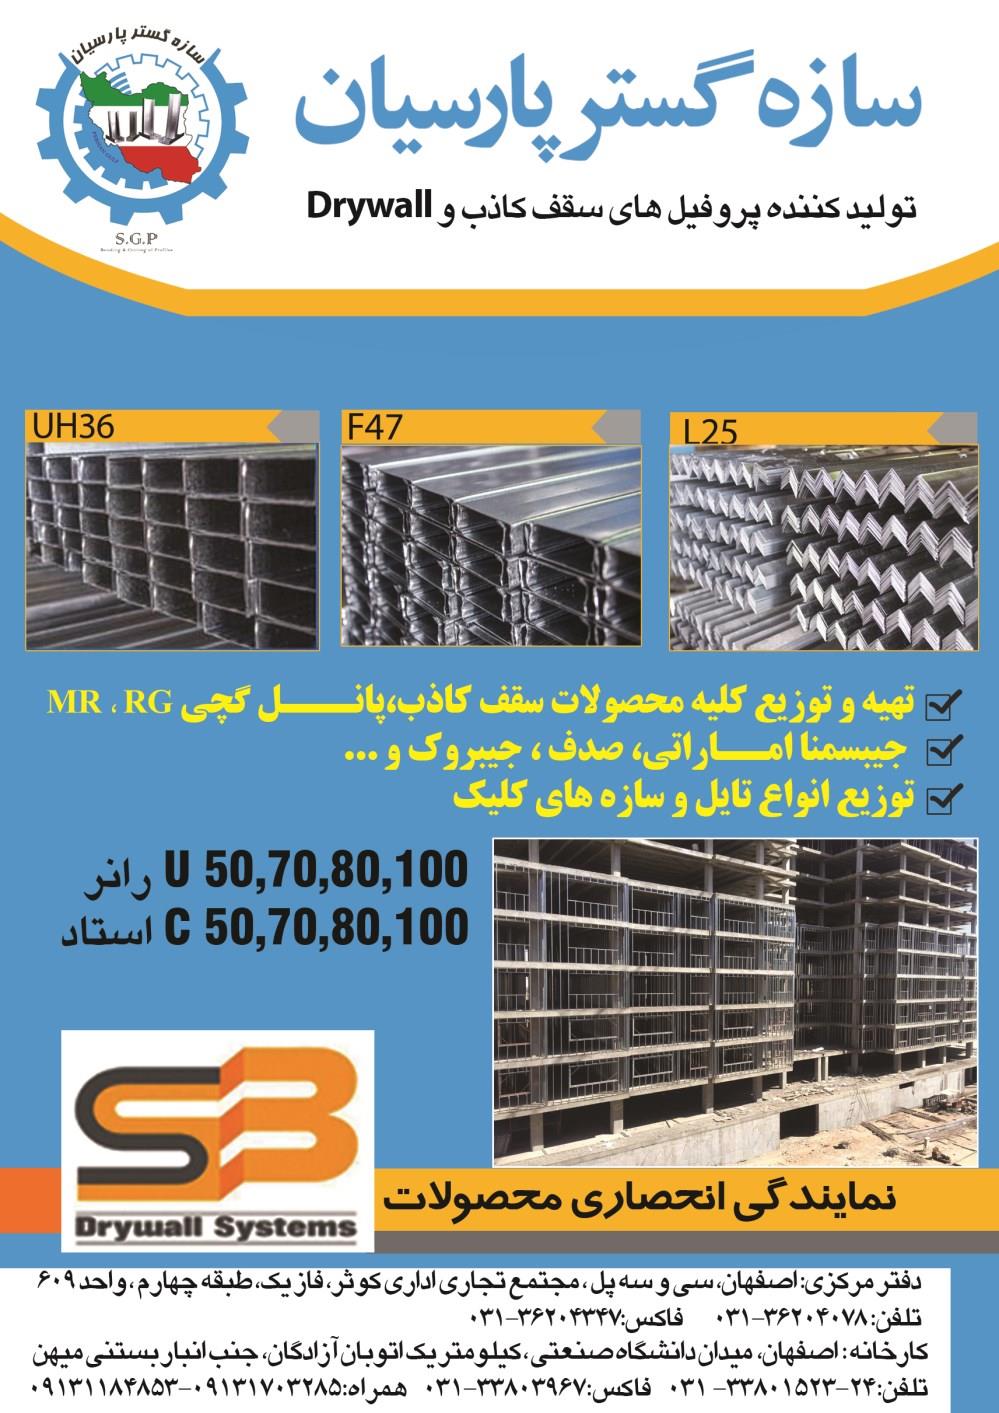 تولید-کننده-پرفیل-های-سقف-کاذب-و-Drywall-آگهی-در-شماره-286